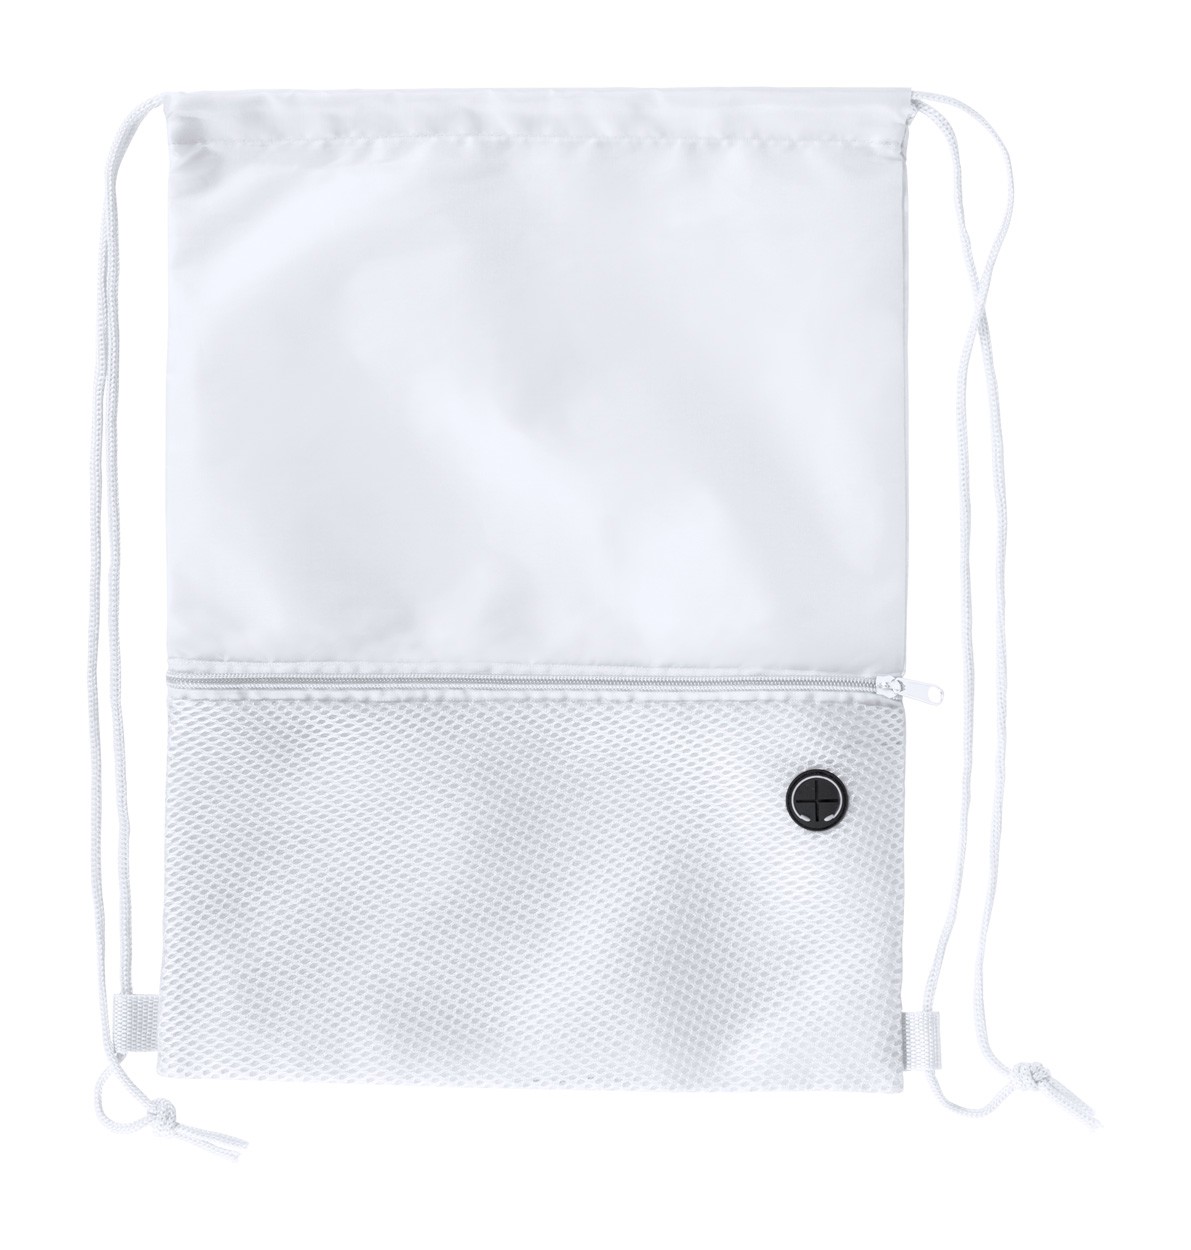 Drawstring Bag Bicalz - White